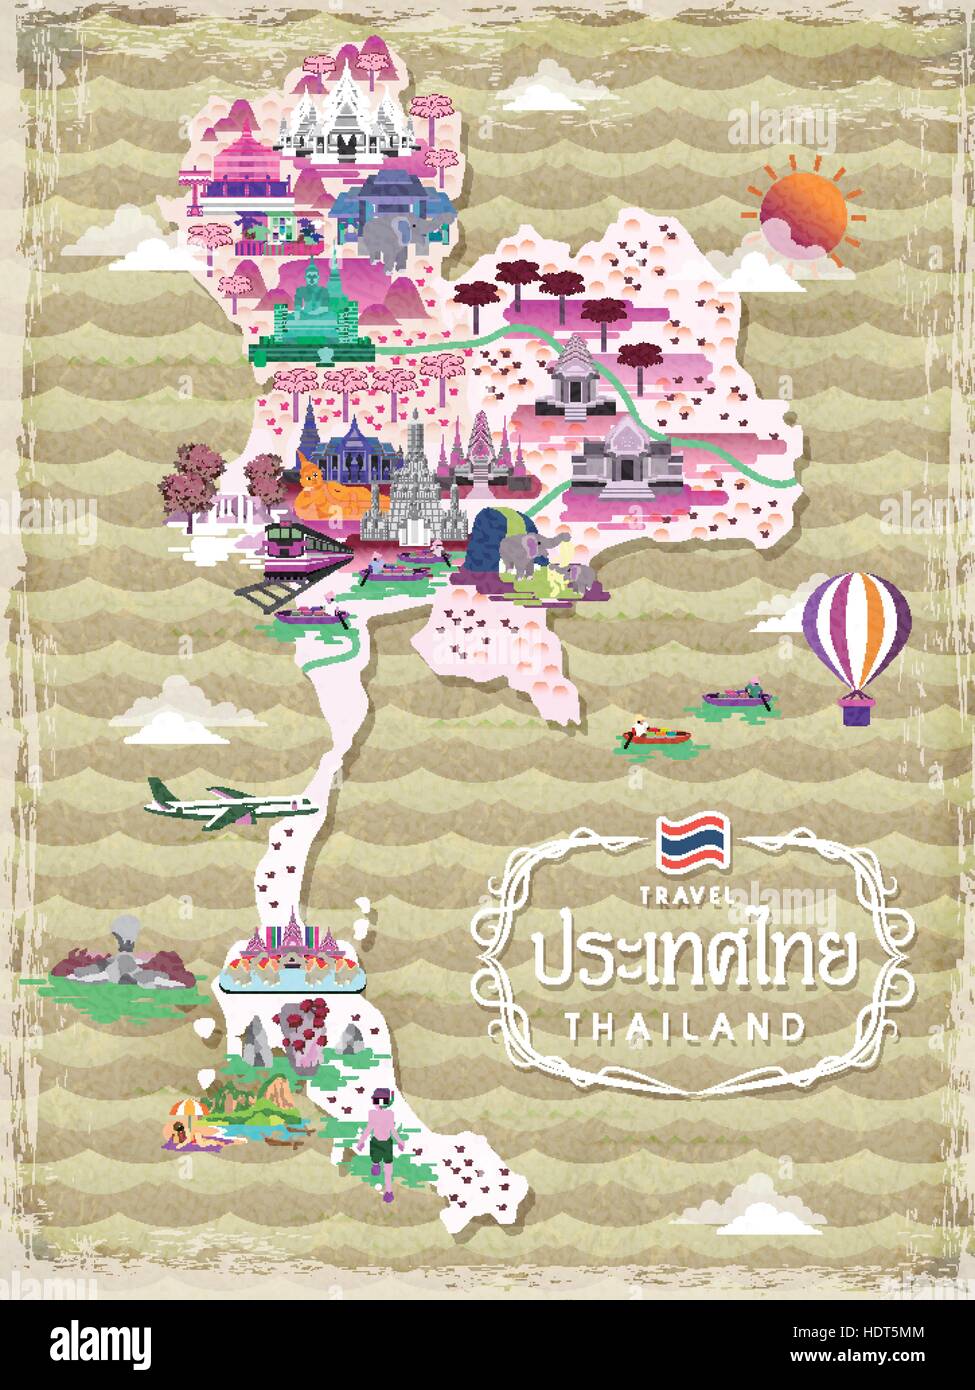 Mapa de viajes de Tailandia atractivo - título word nombre del país es Tailandia en Tailandia Ilustración del Vector